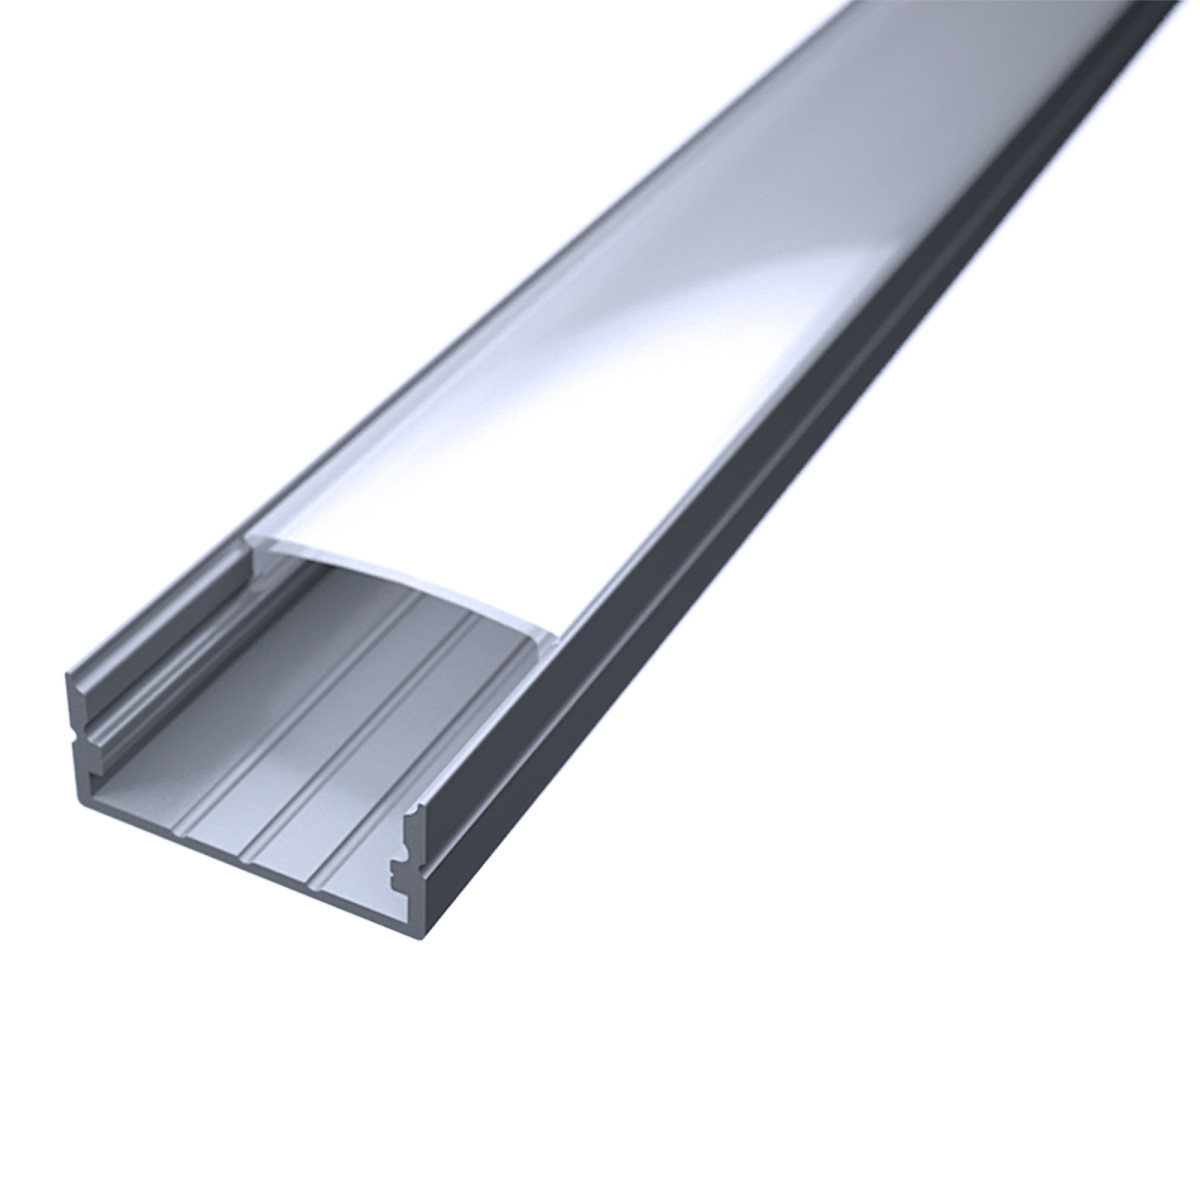 LED Flachprofil "Slim-Line max" | Abdeckung diffus | Zuschnitt auf 32cm |